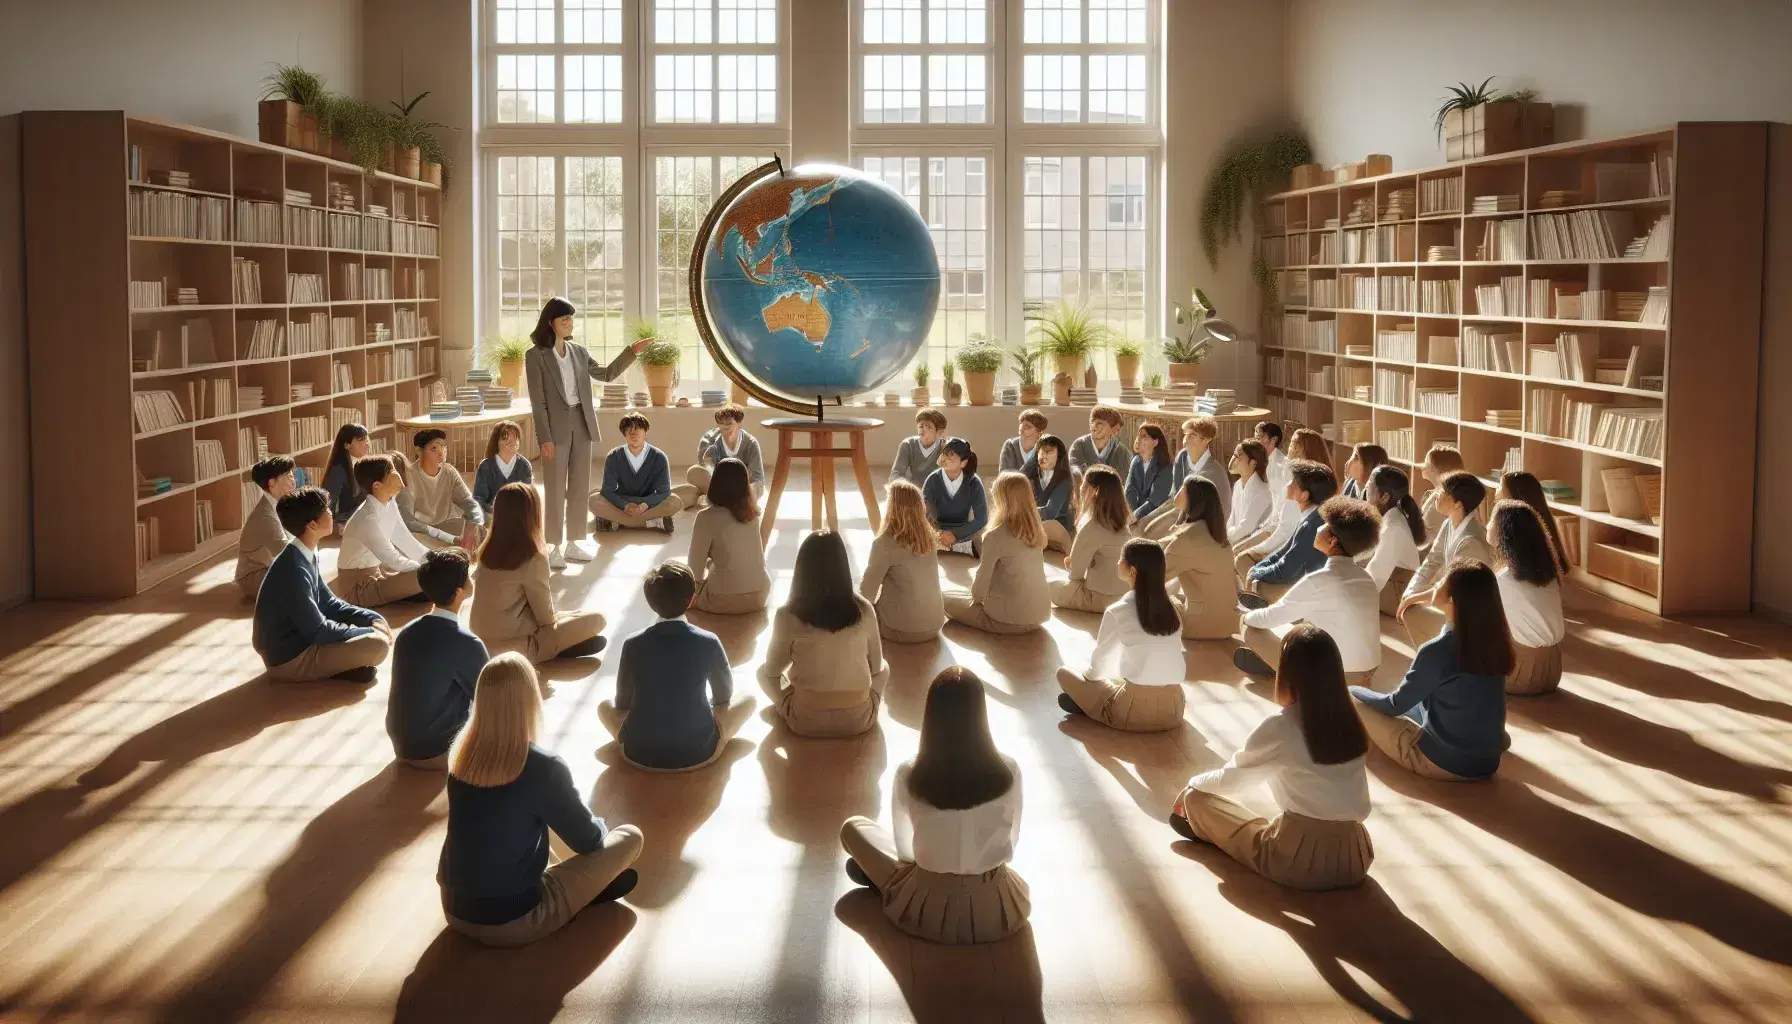 Grupo diverso de estudiantes en uniforme escolar atienden a profesor que señala un globo terráqueo en aula iluminada con luz natural, rodeados de estanterías con libros y plantas.